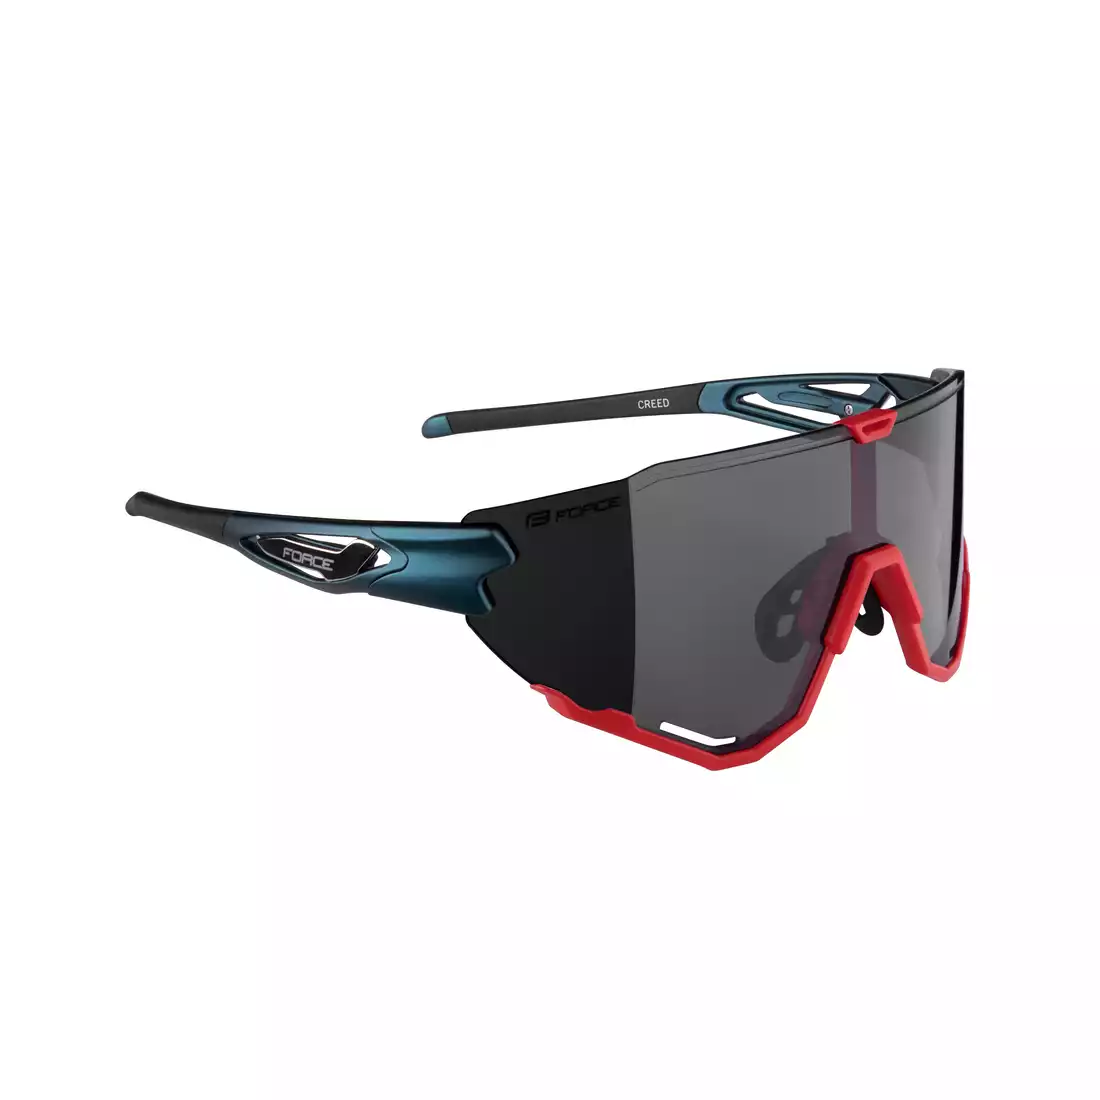 FORCE okulary rowerowe / sportowe CREED czerwony-niebieski, 91179